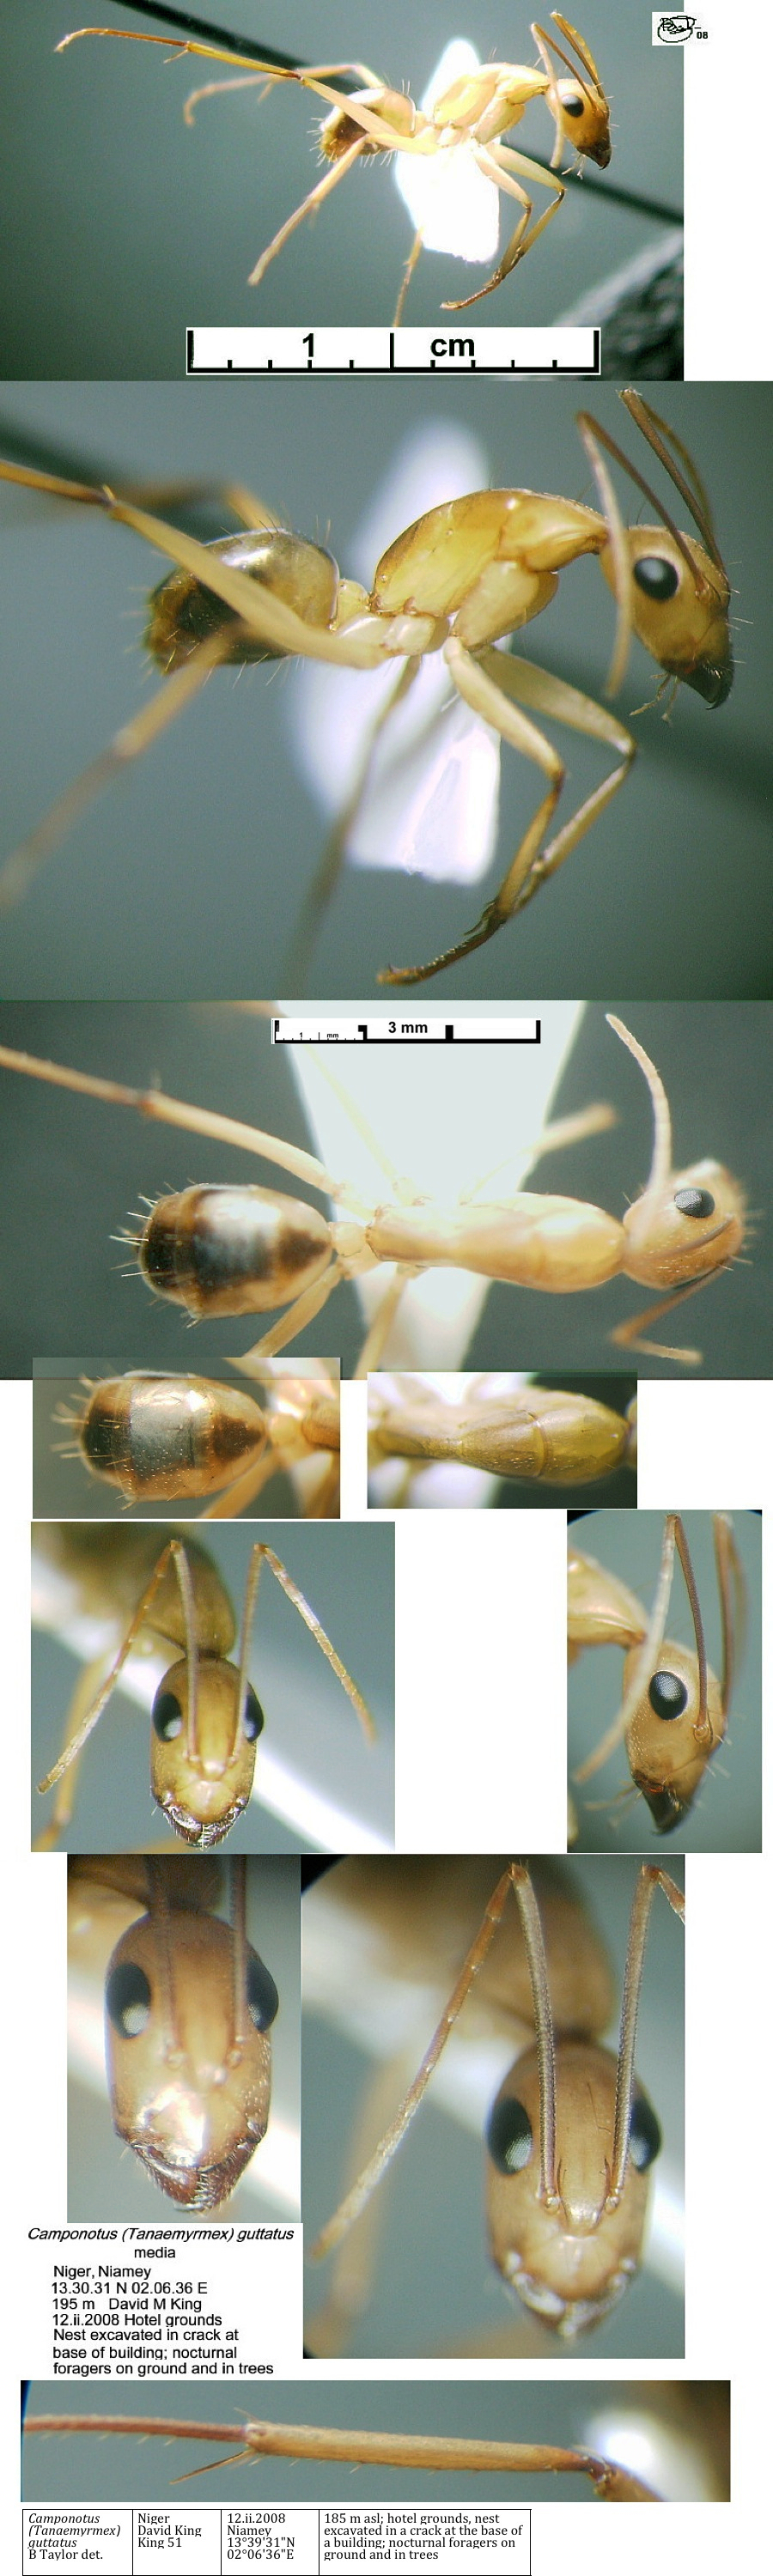 {Camponotus guttatus media}